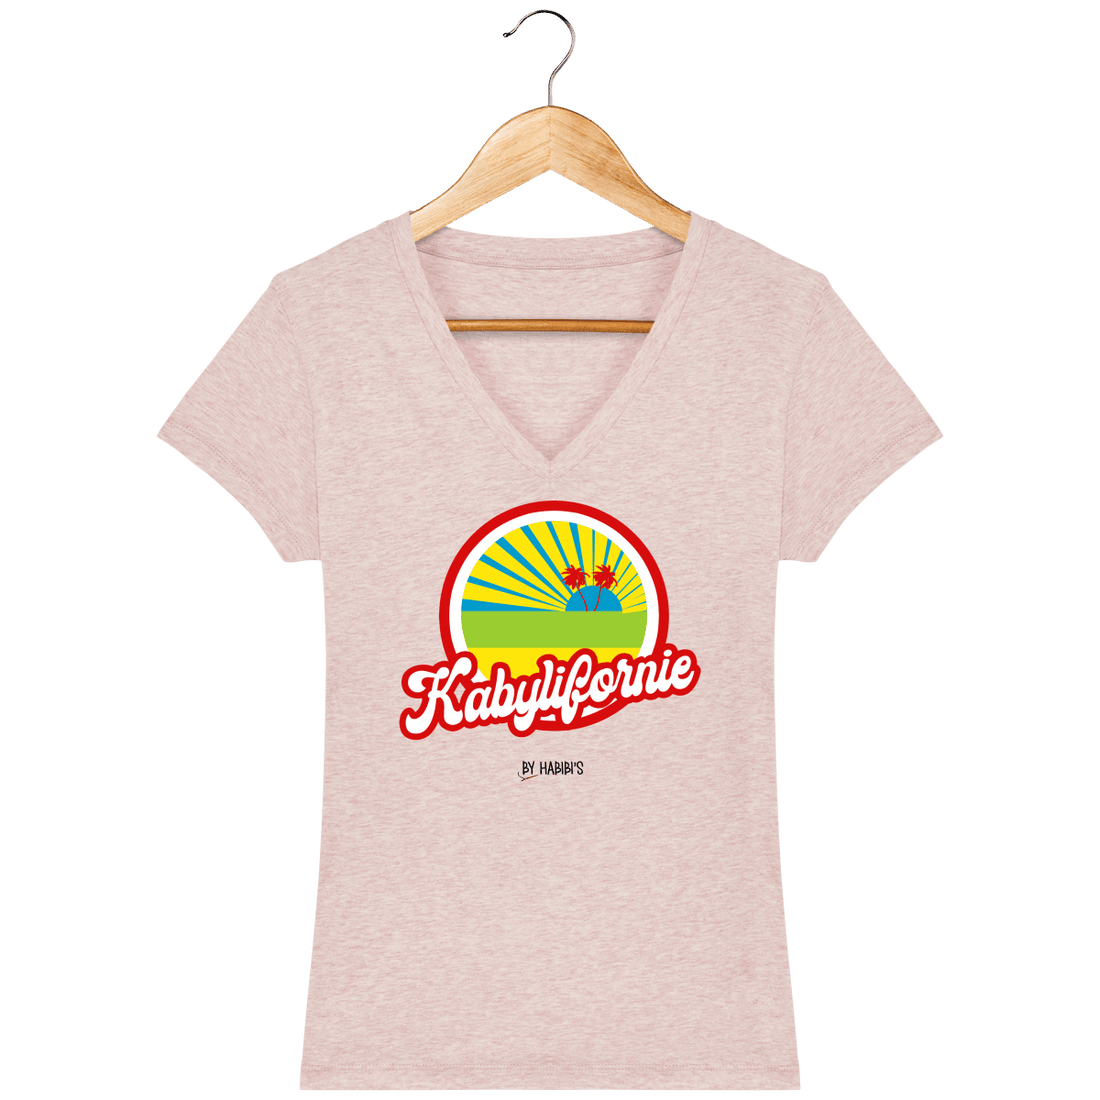 Femme>Tee-shirts - T-Shirt Femme Col V <br> Kabyliforine